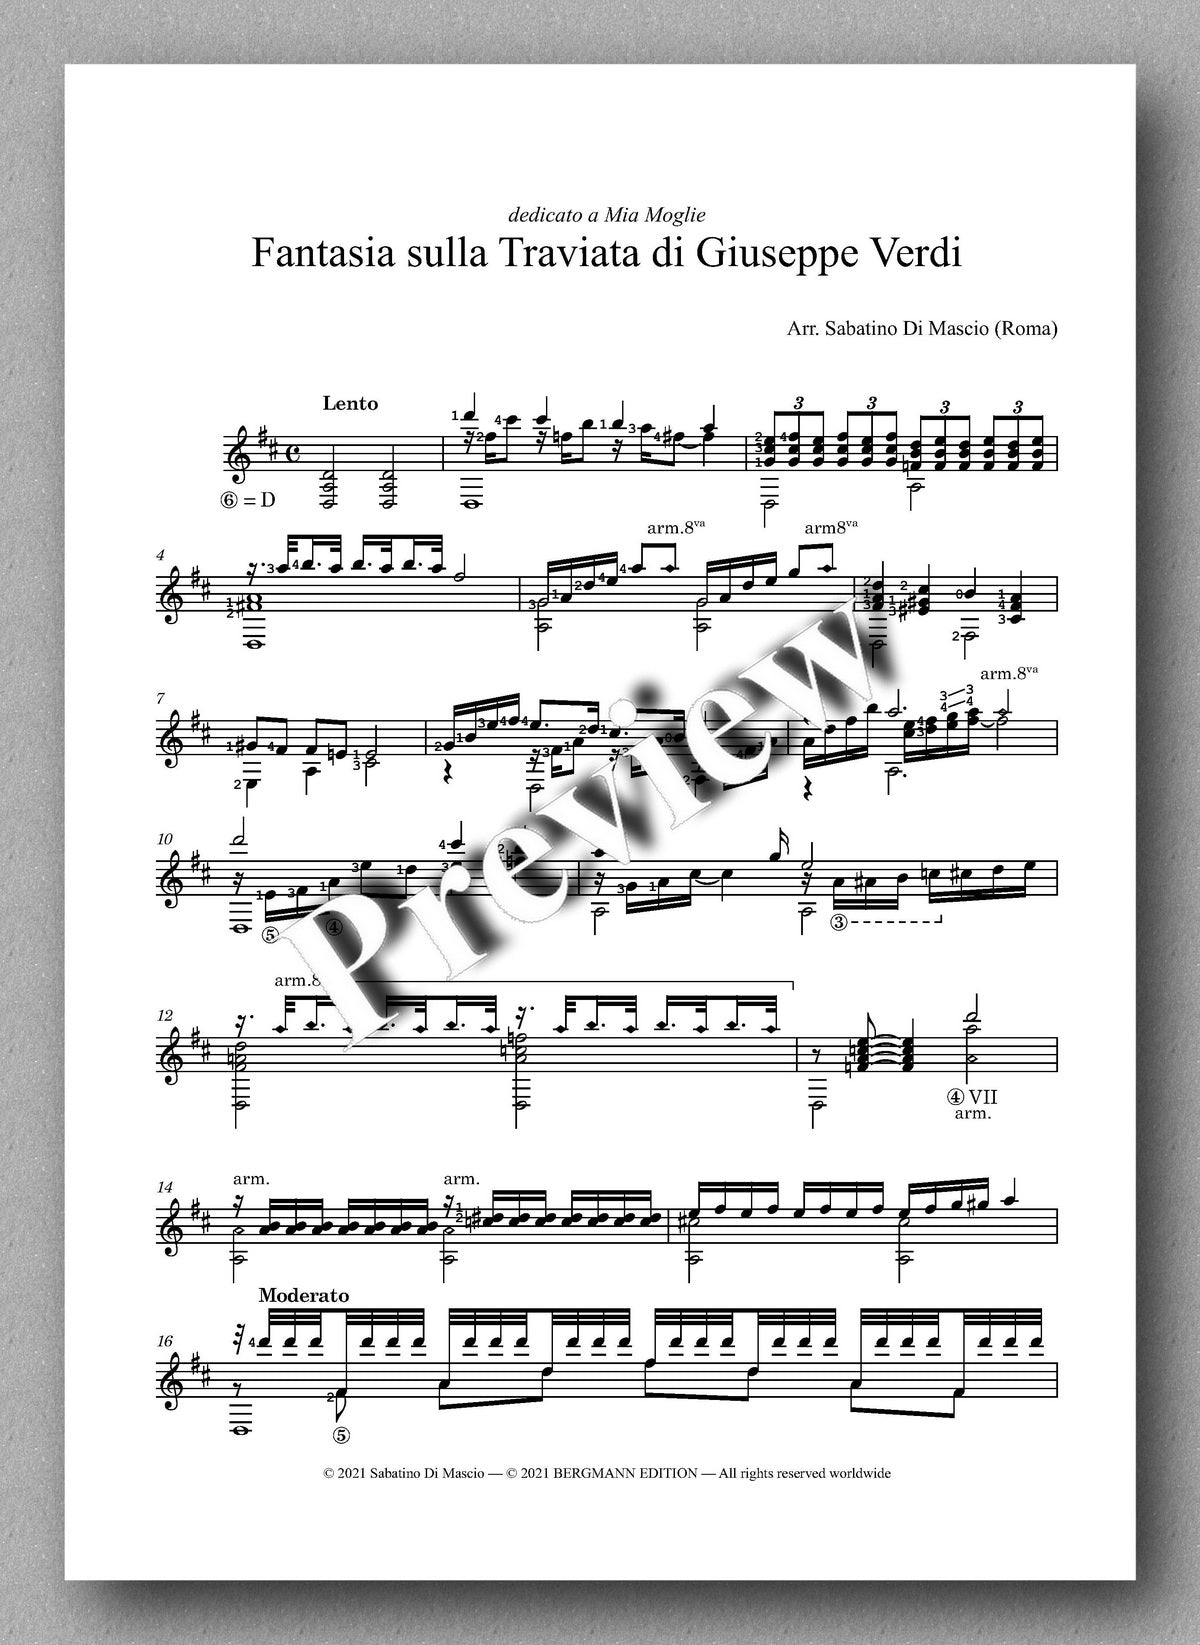 Mascio, Fantasia sulla Traviata di Giuseppe Verdi - music score 1